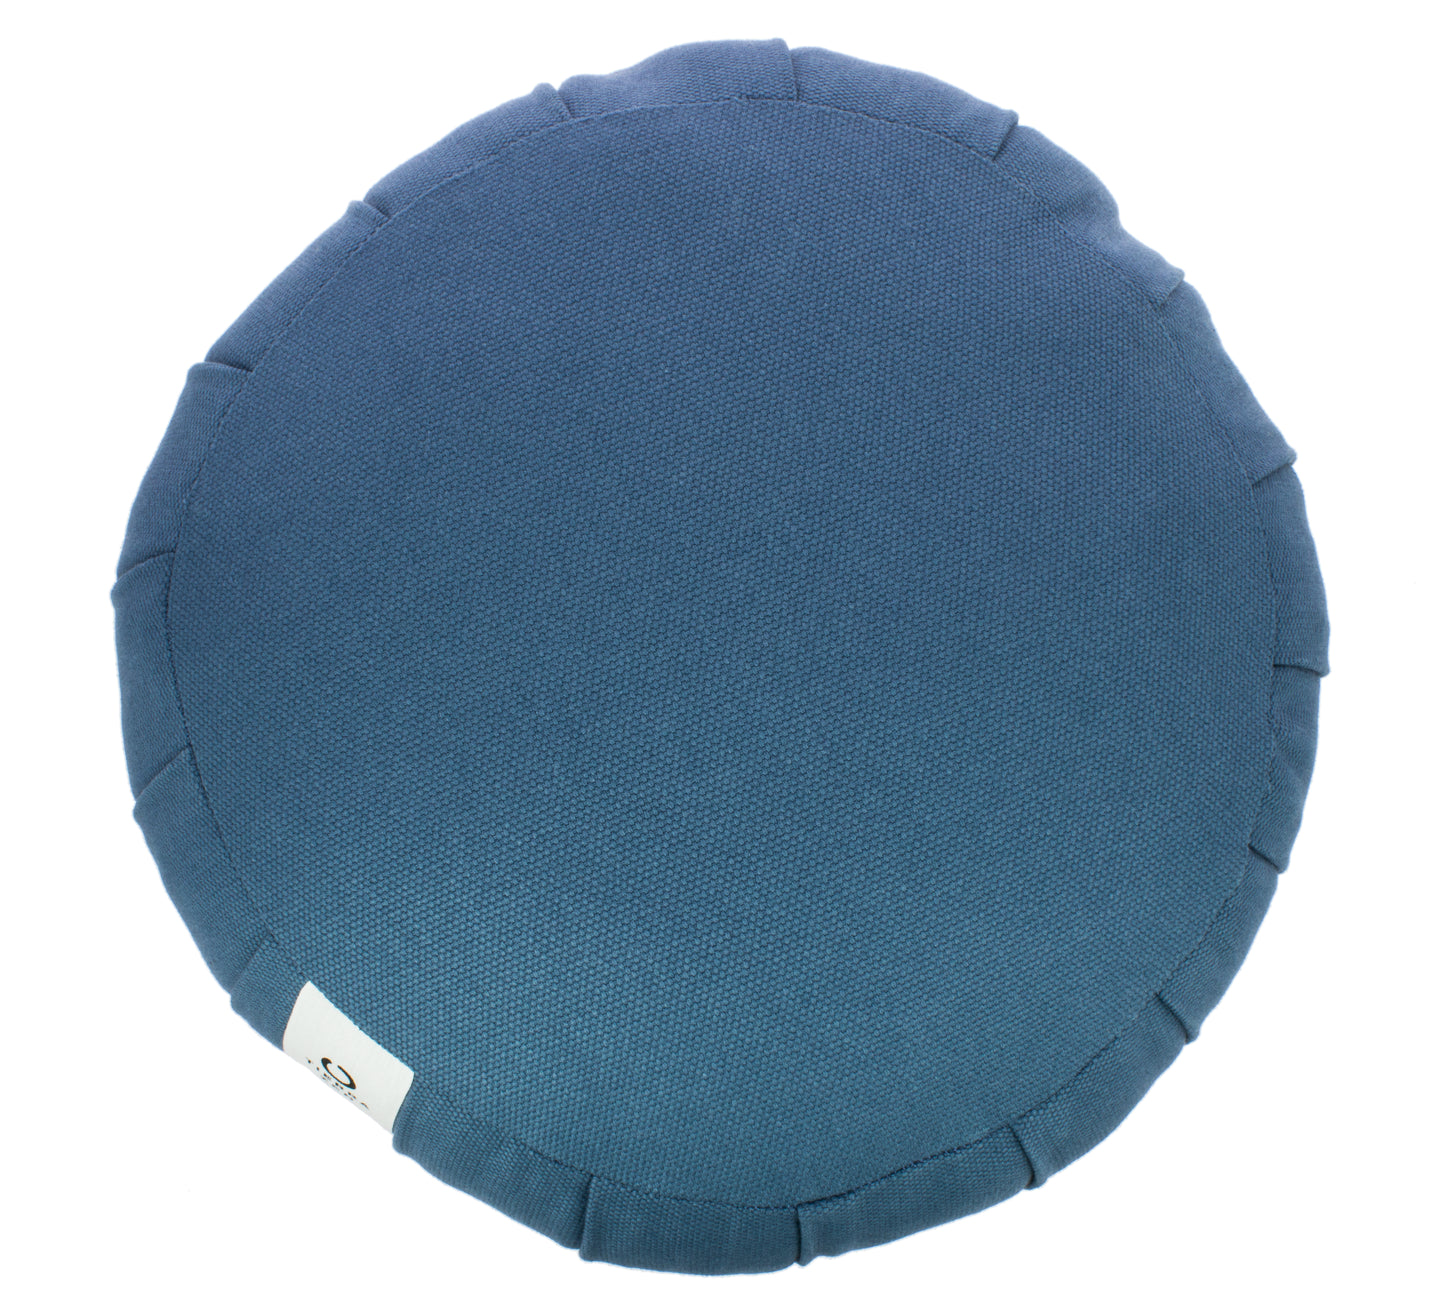 Kapok Round Zafu - Blue, Large